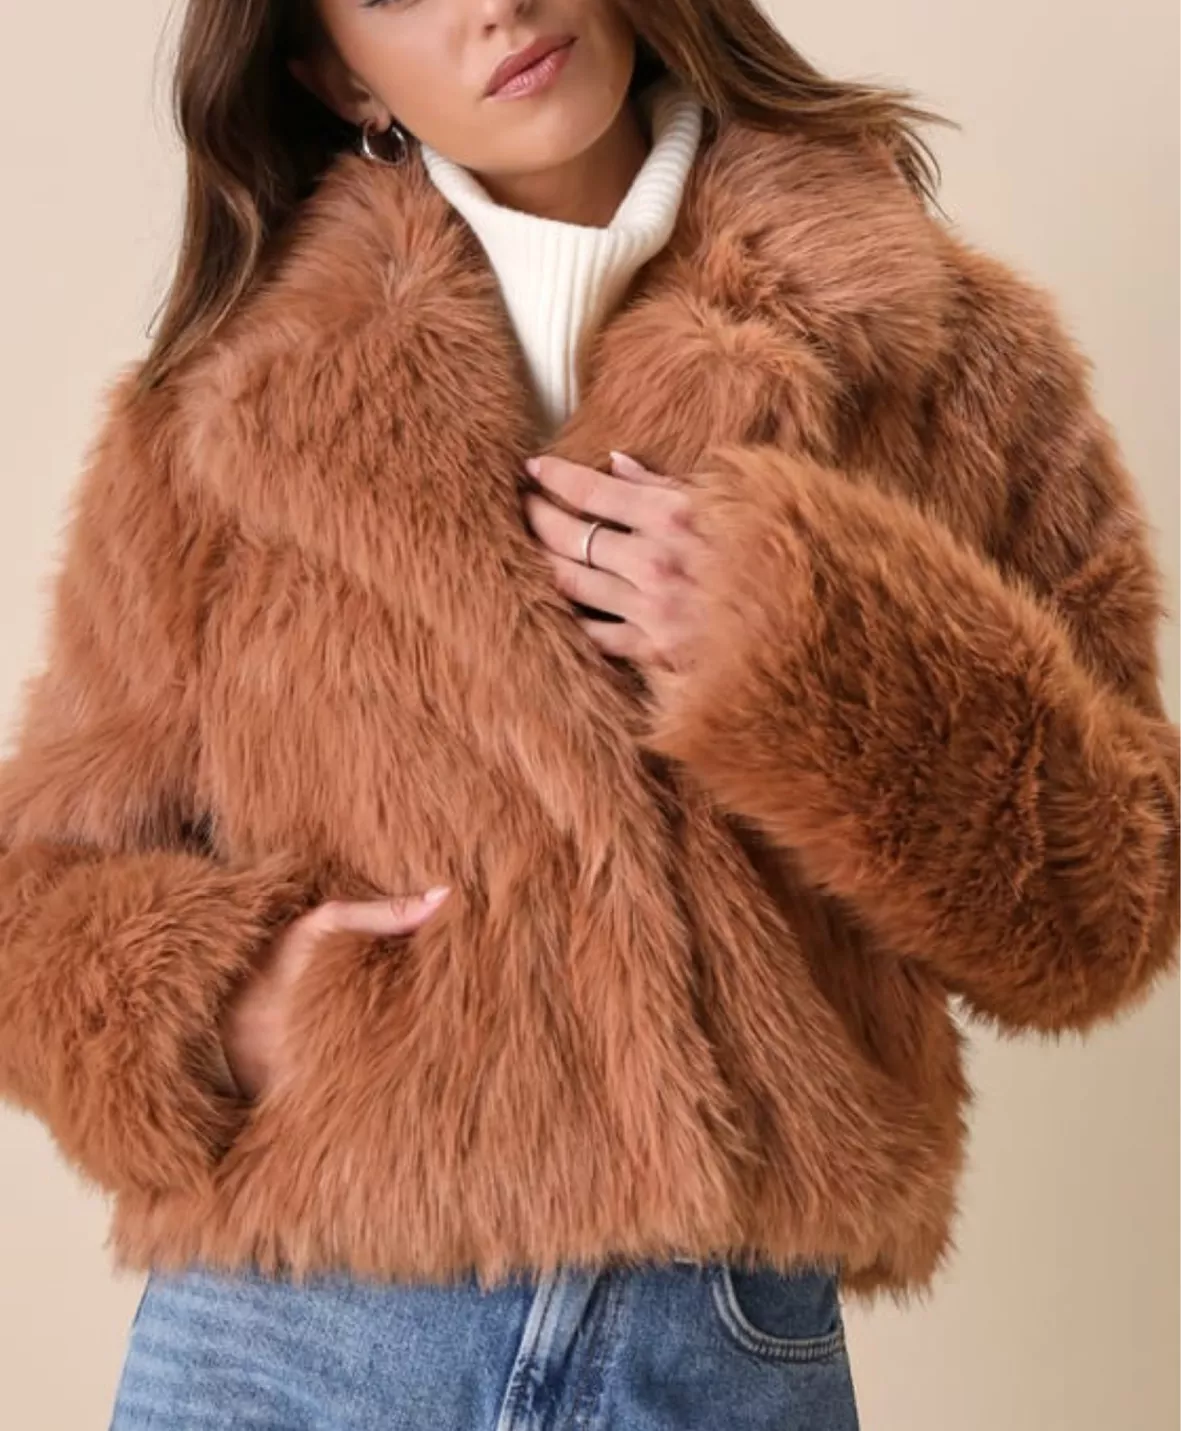 Ivory Fur Jacket - Cropped Faux Fur Jacket - Fuzzy Jacket - Lulus